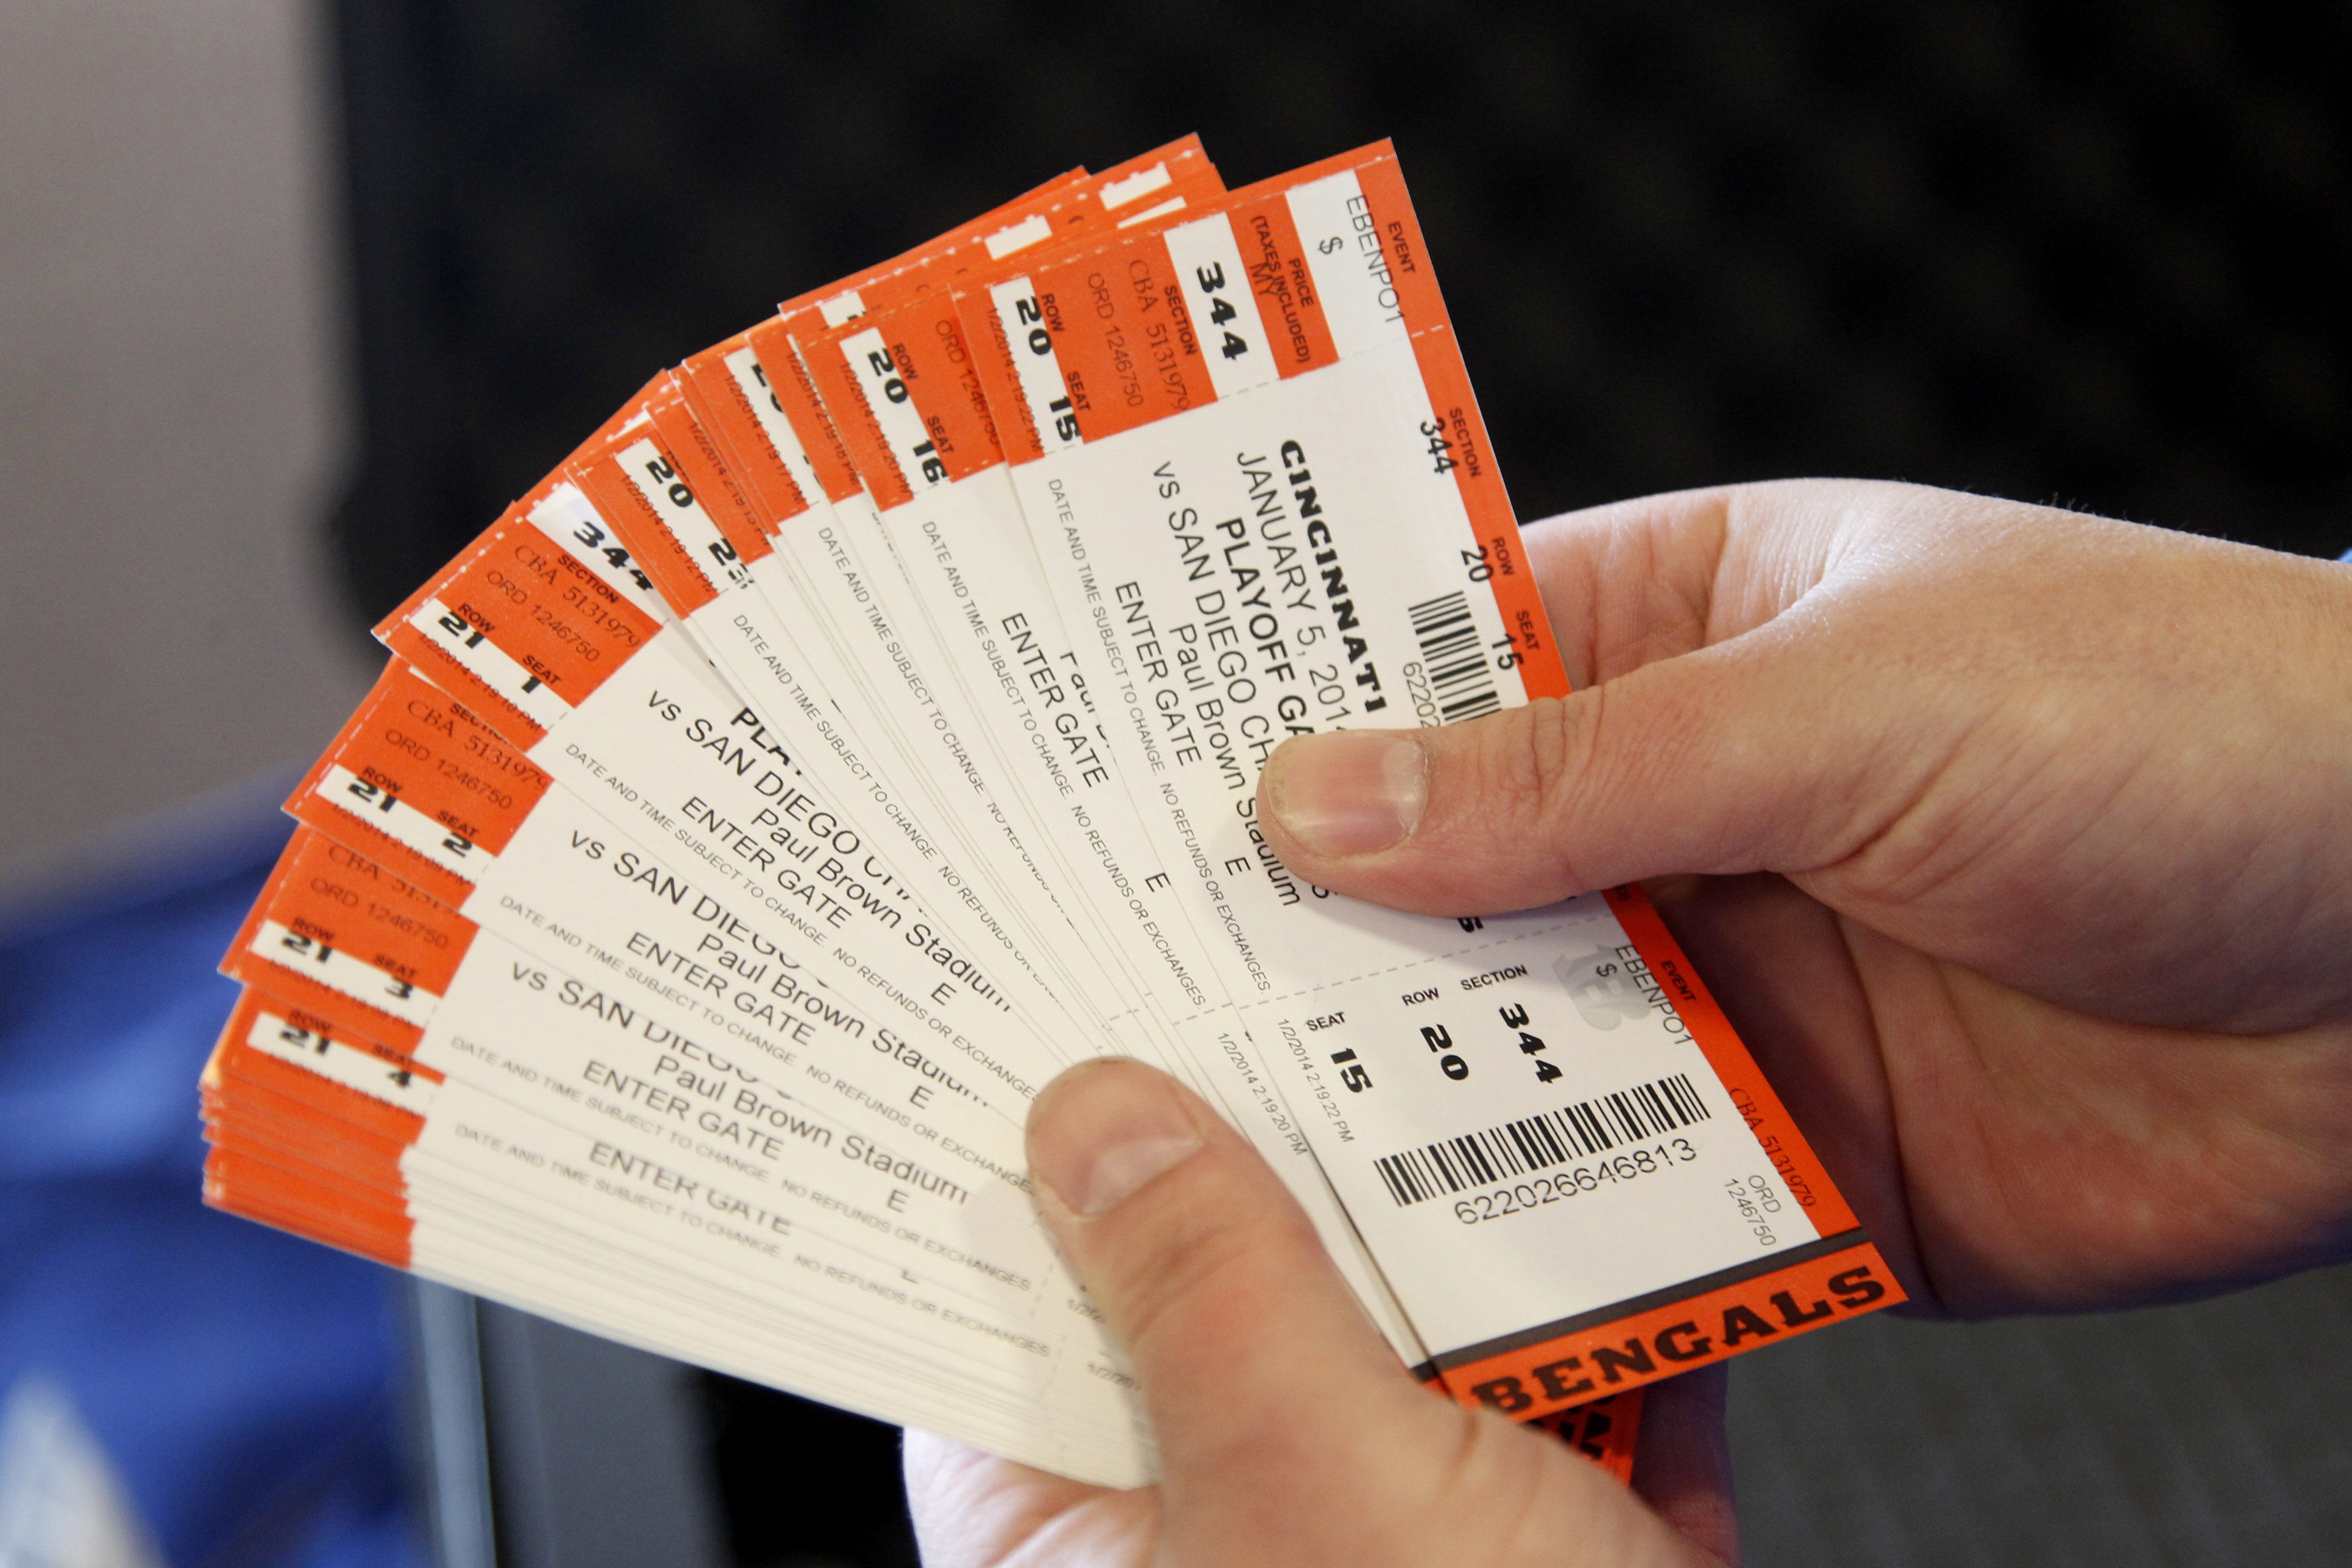 Cincinnati Bengals Ticket Giveaway: Win Free Tickets to the Home Opener!